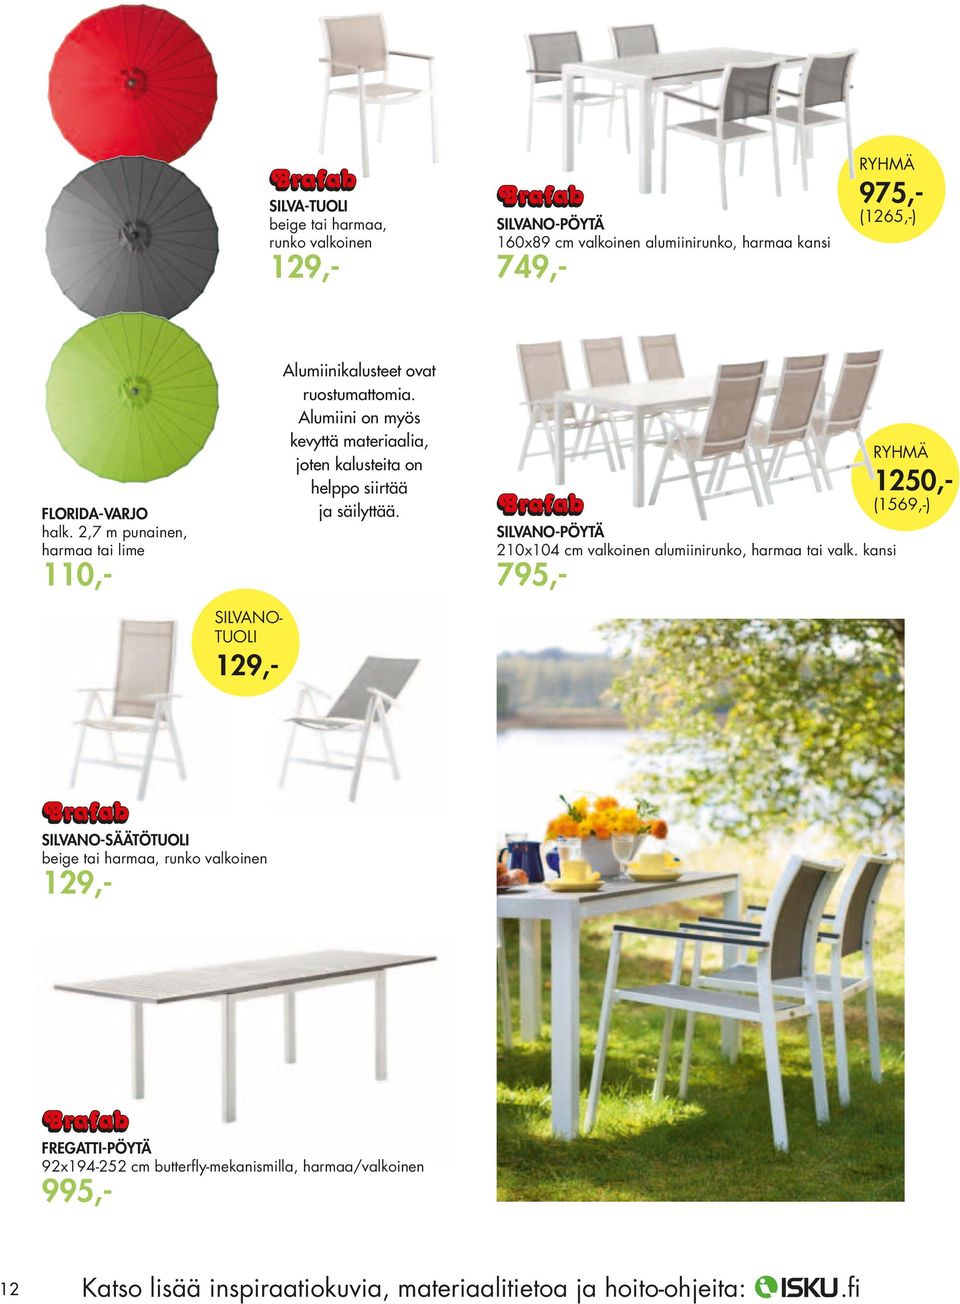 silvano-pöytä 210x104 cm valkoinen alumiinirunko, harmaa tai valk.